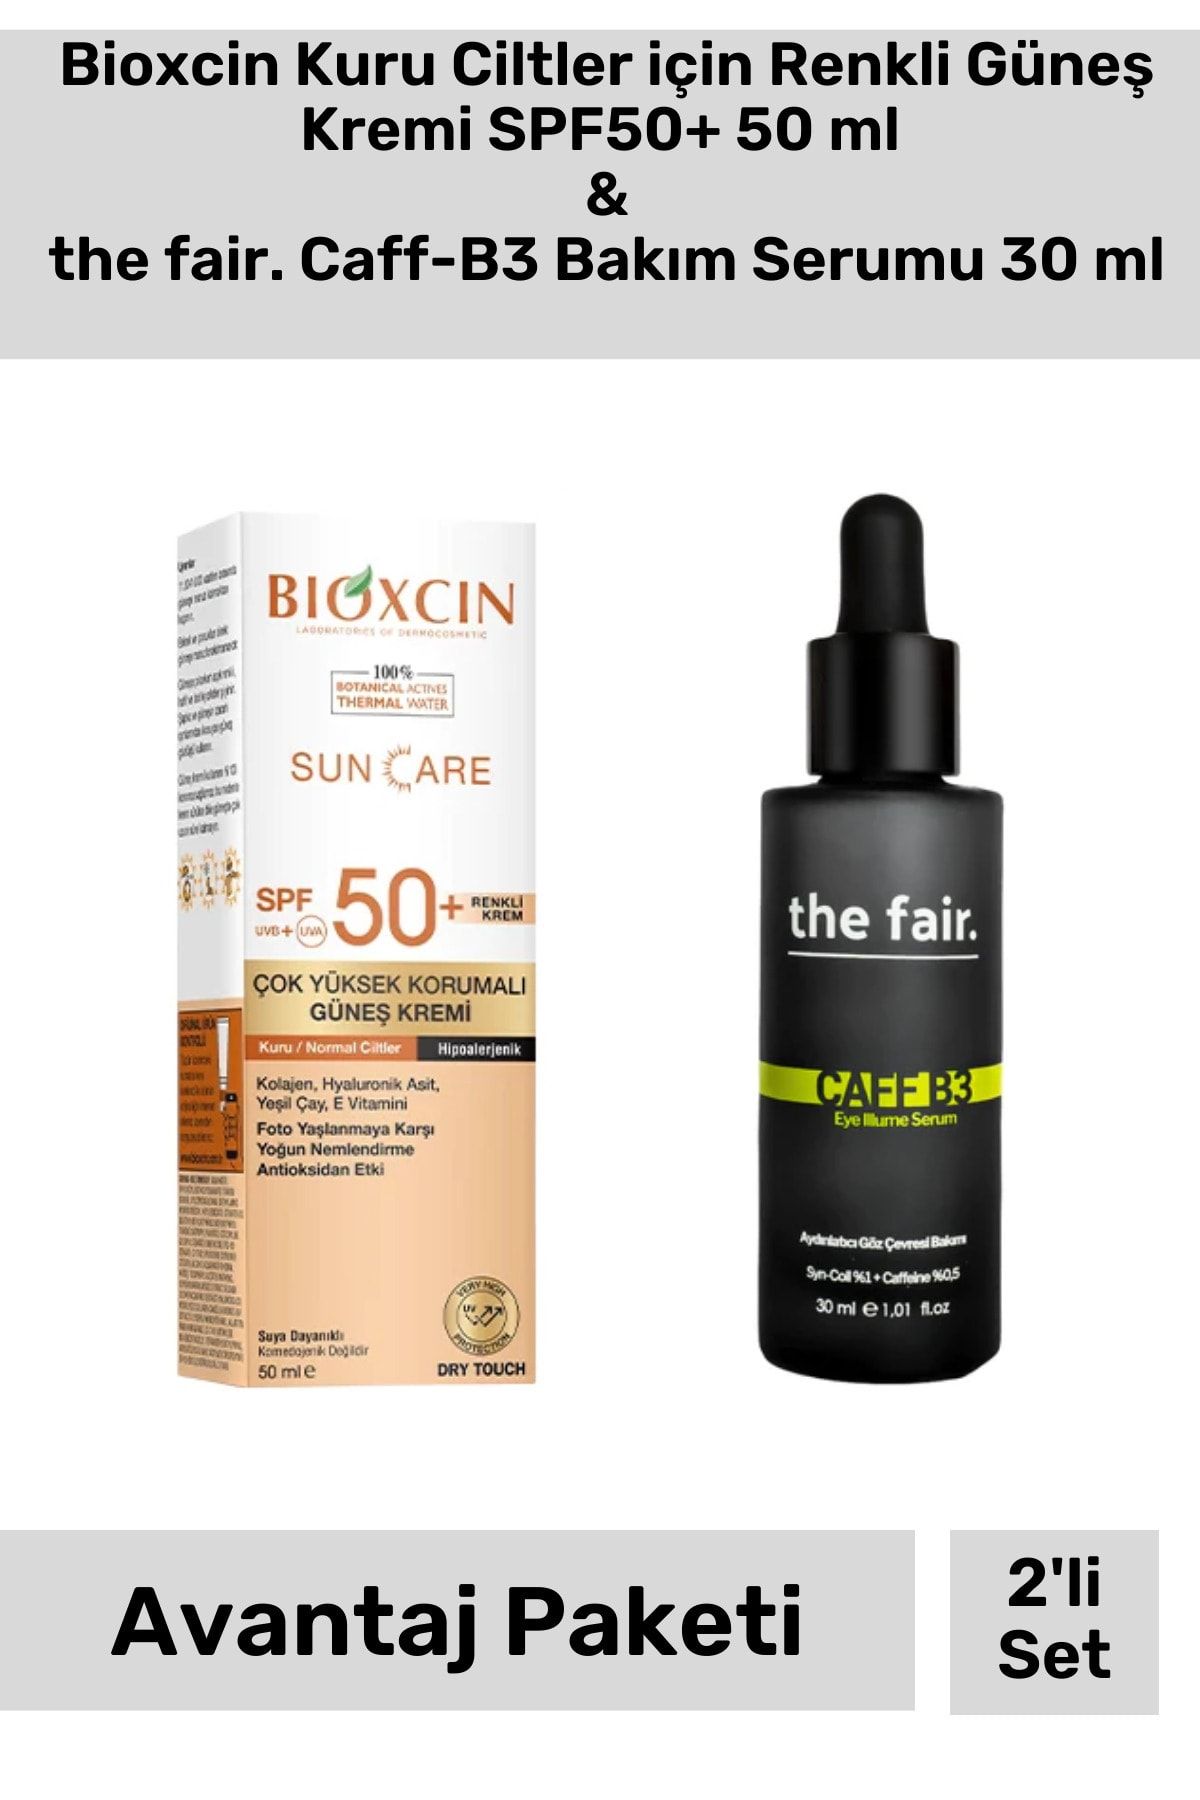 Bioxcin Kuru Ciltler için Renkli Güneş Kremi SPF50+ 50 ml & the fair. Caff-B3 Bakım Serumu 30 ml